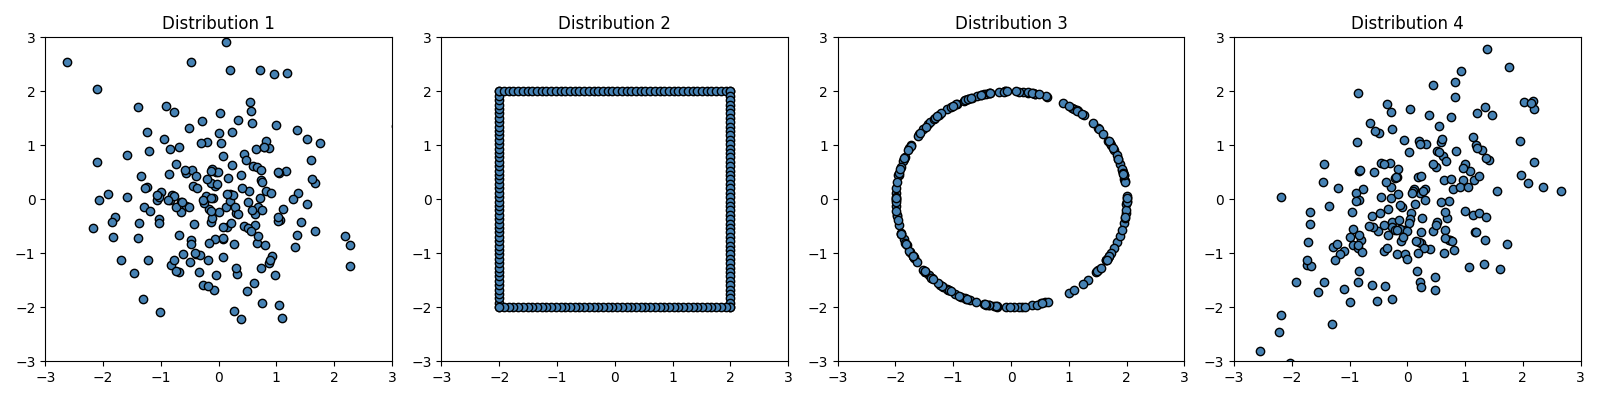 Distribution 1, Distribution 2, Distribution 3, Distribution 4